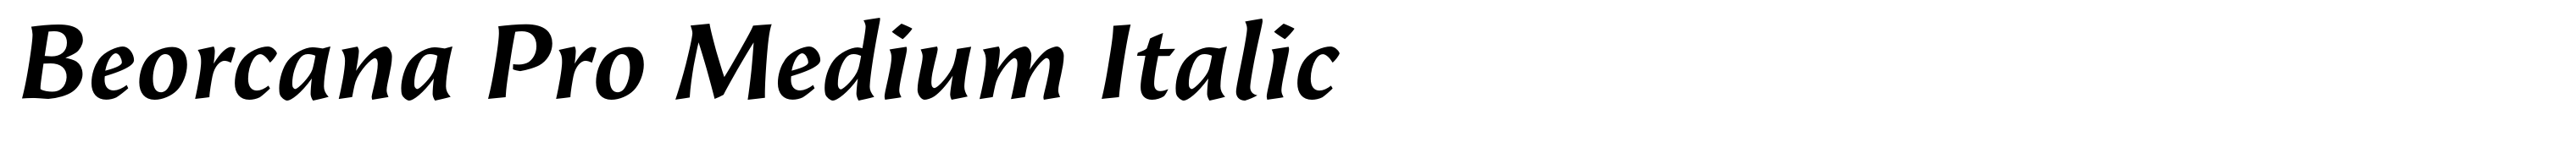 Beorcana Pro Medium Italic